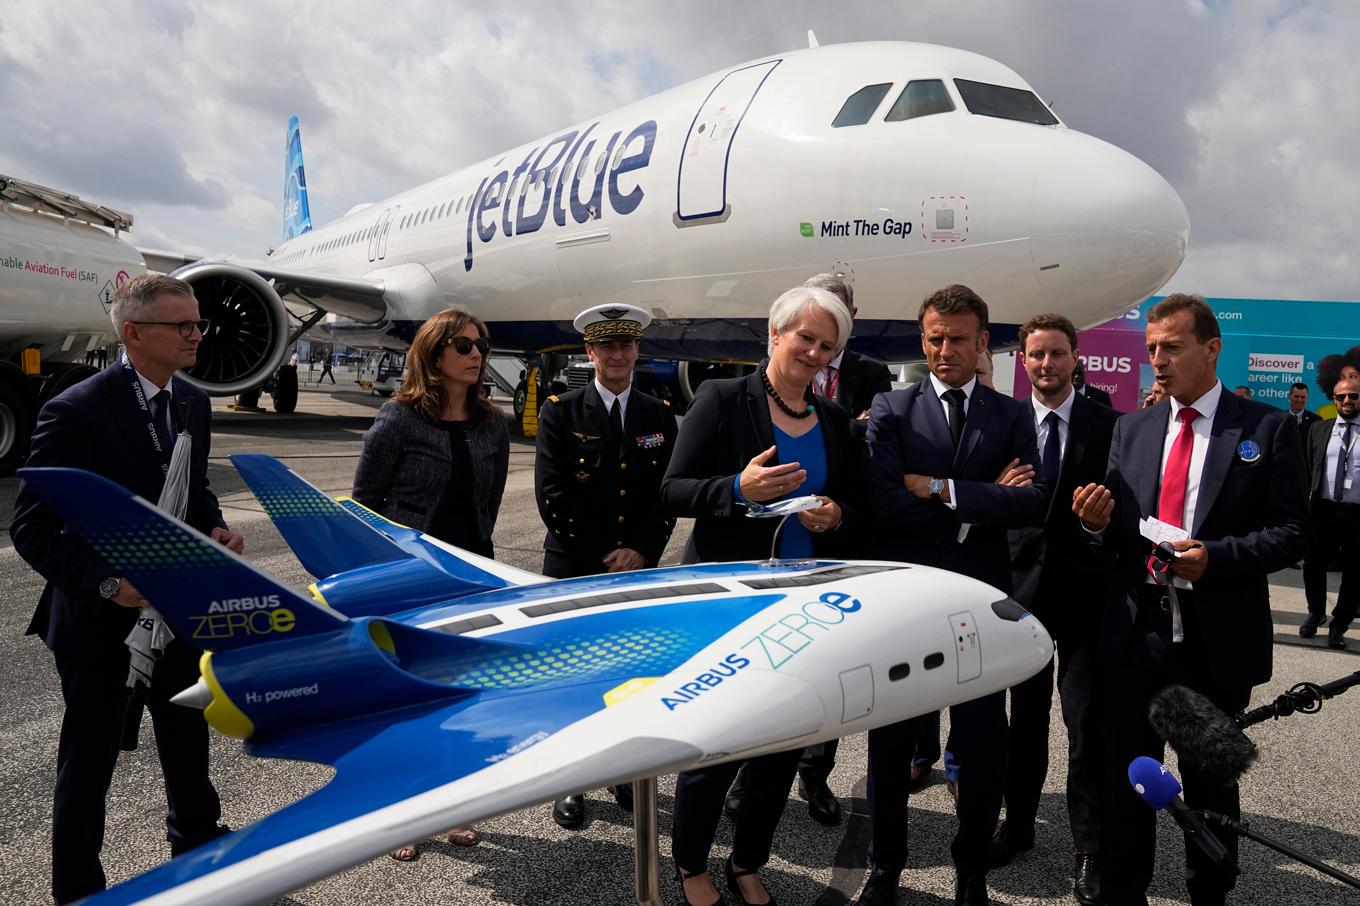 Frankrikes president Emmanuel Macron studerar en modell av ett Airbus Zero, en modell som är tänkt att drivas enbart av vätgas. Arkivbild. Foto: Michel Euler/AP/TT